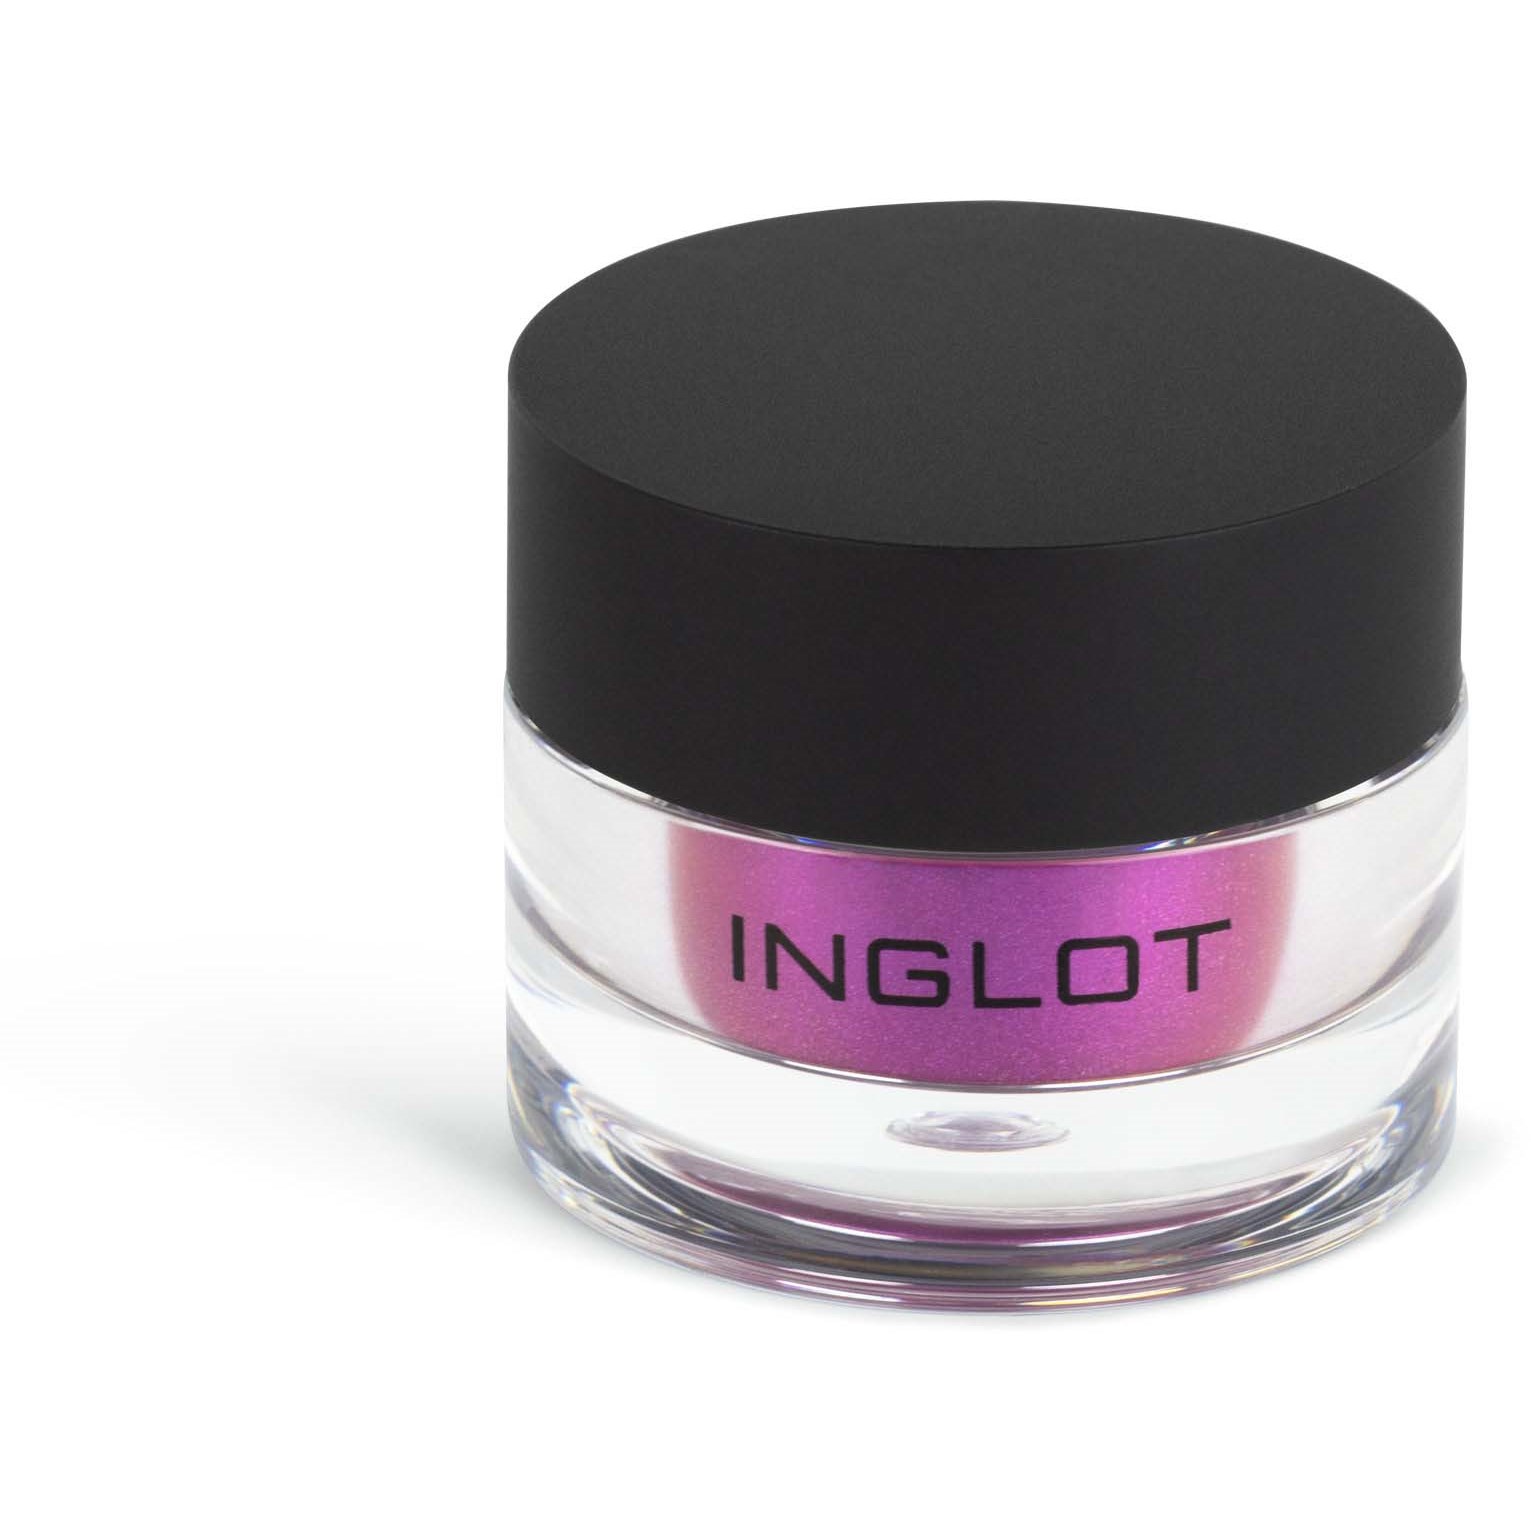 Inglot Eye & Body Powder Pigment 404